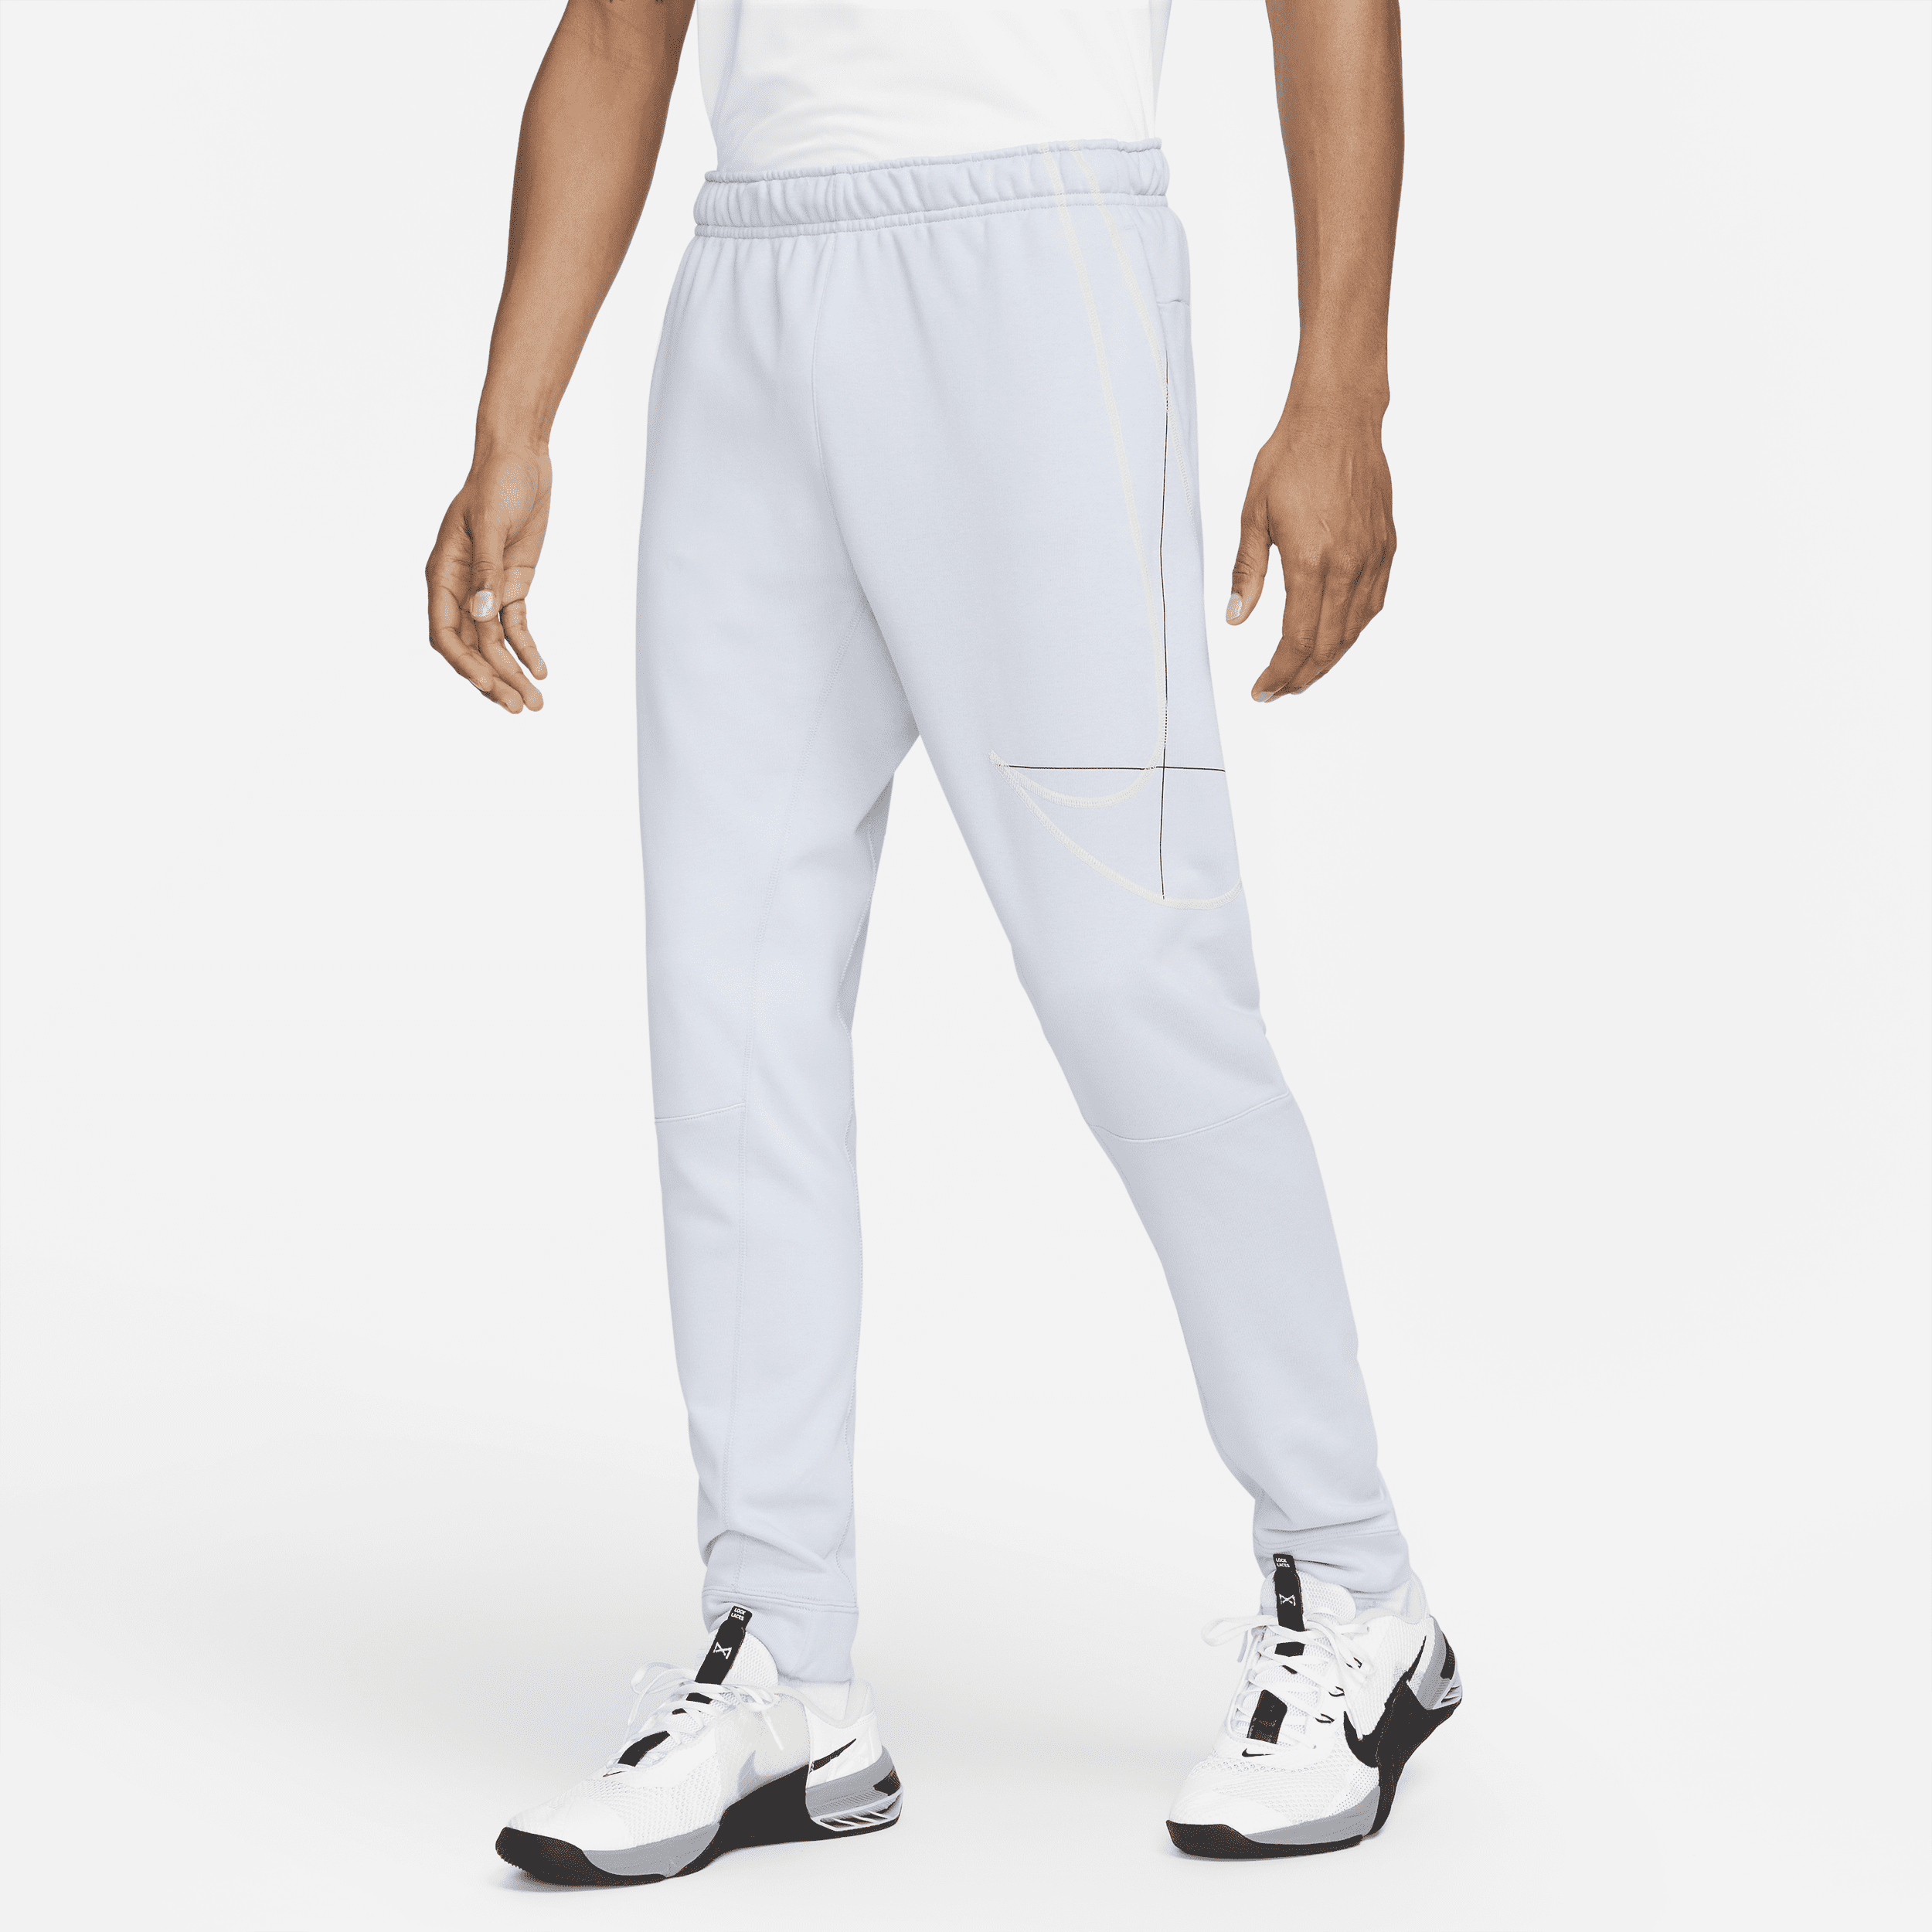 Figursyede Nike Dri-FIT-løbebukser i fleece til mænd - blå